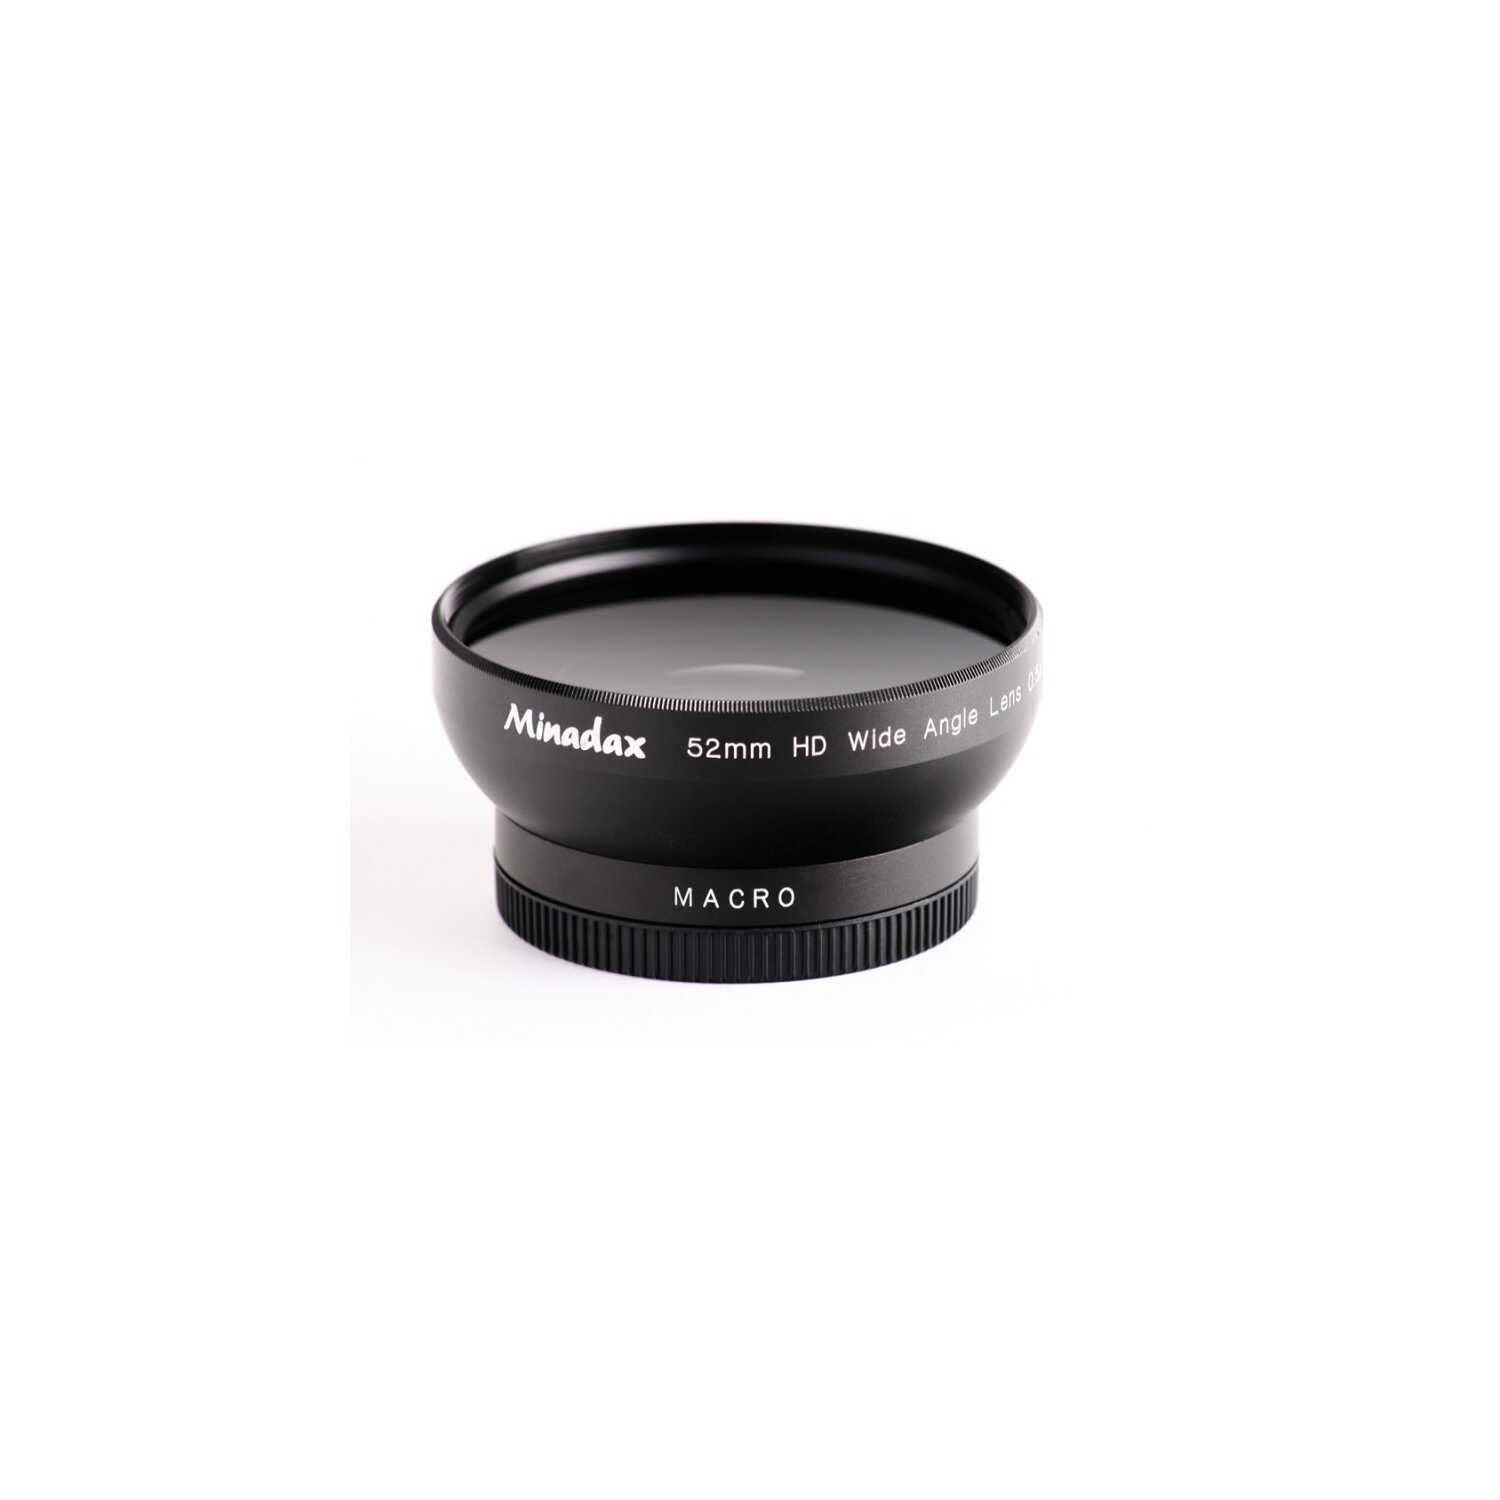 Minadax 0.5x Weitwinkel Vorsatz mit Makrolinse kompatibel mit Canon Powershot A510, A520, A540 - in schwarz